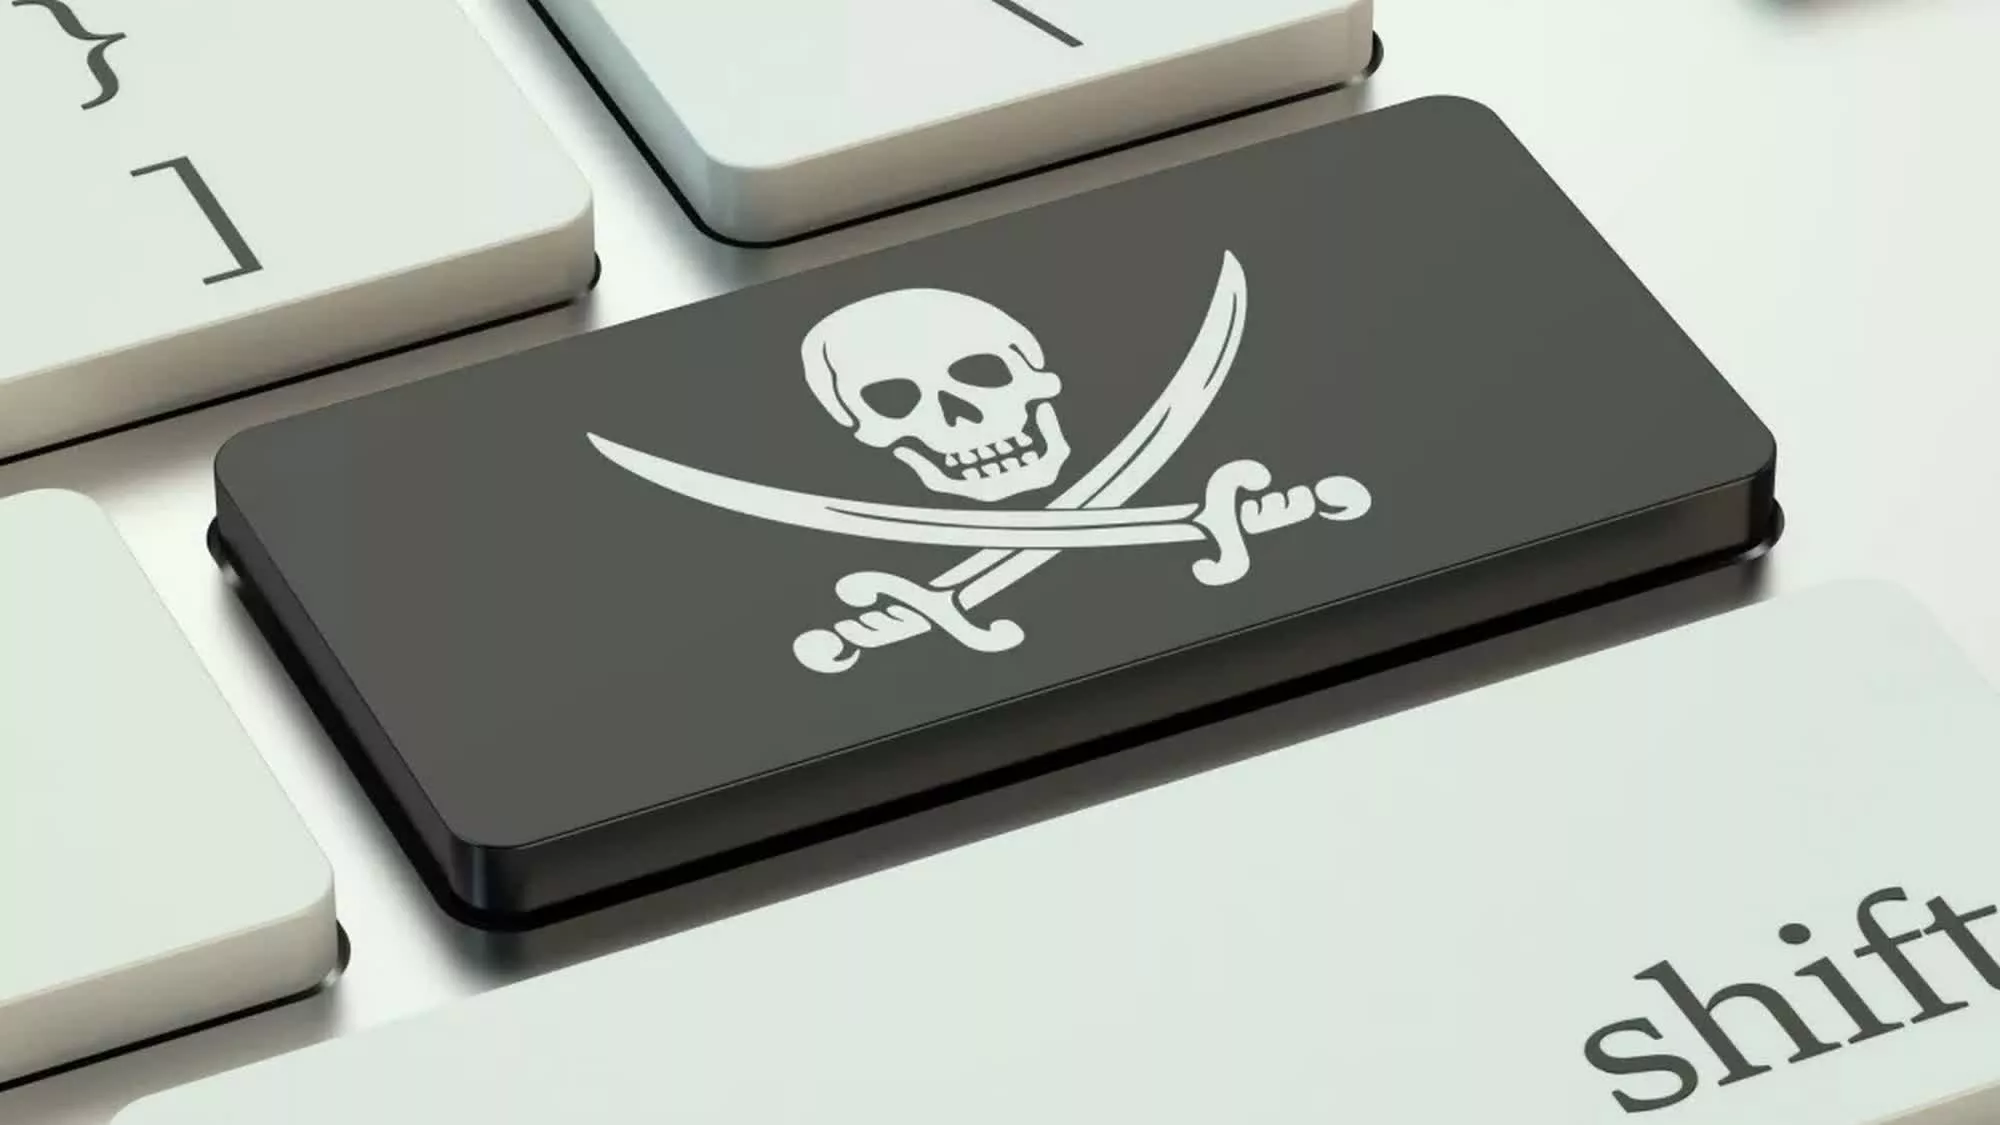 Las advertencias contra la piratería tienen el efecto contrario en los hombres, según un nuevo estudio